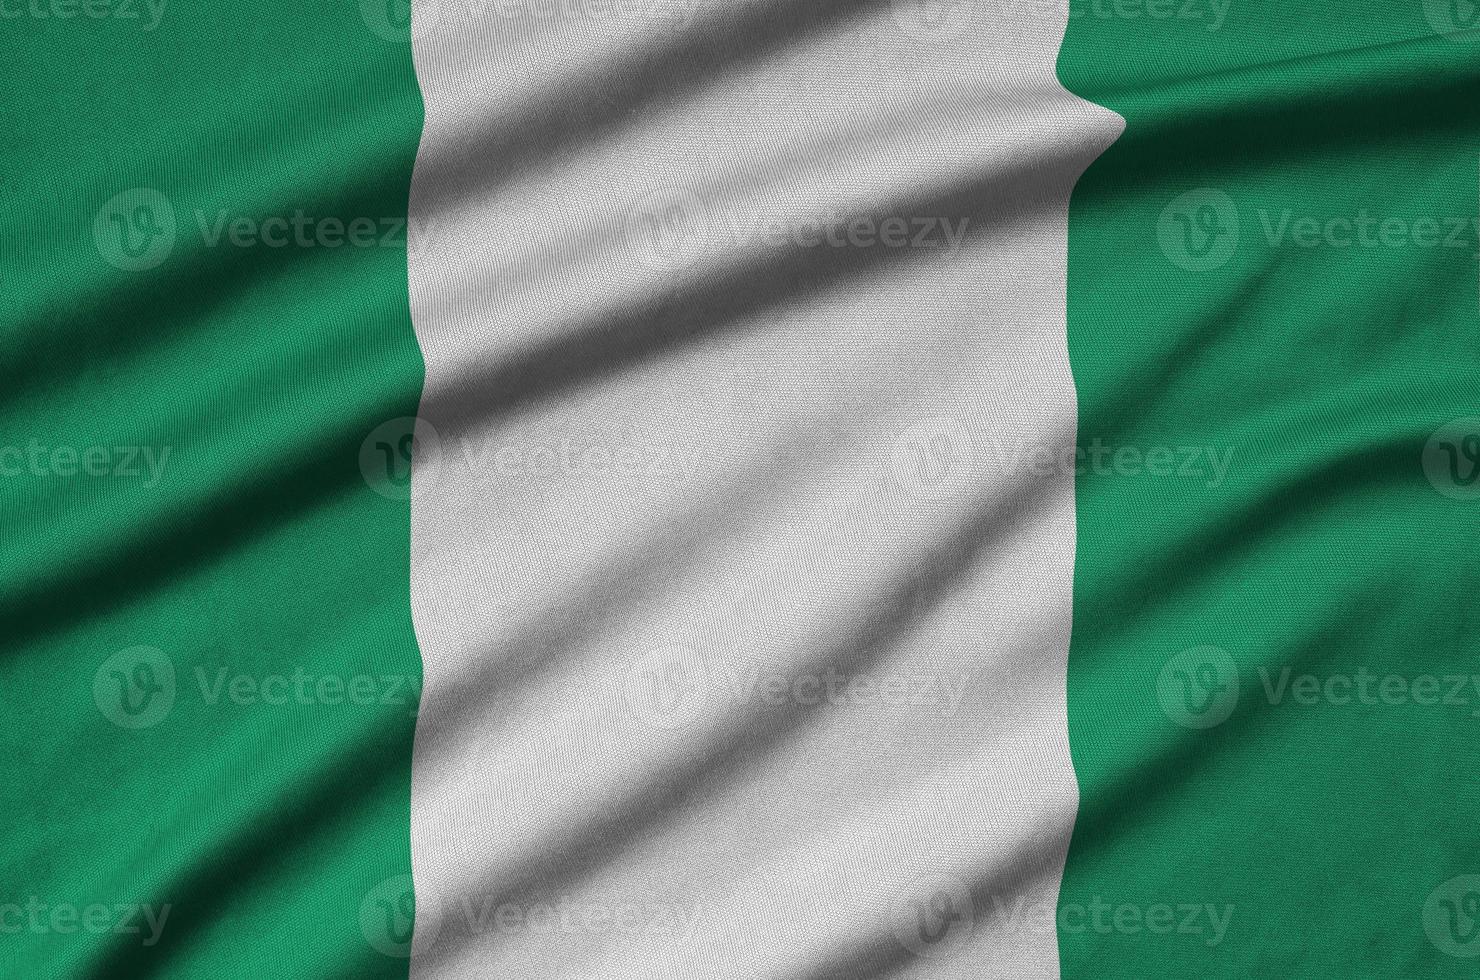 nigeria flagga är avbildad på en sporter trasa tyg med många veck. sport team baner foto